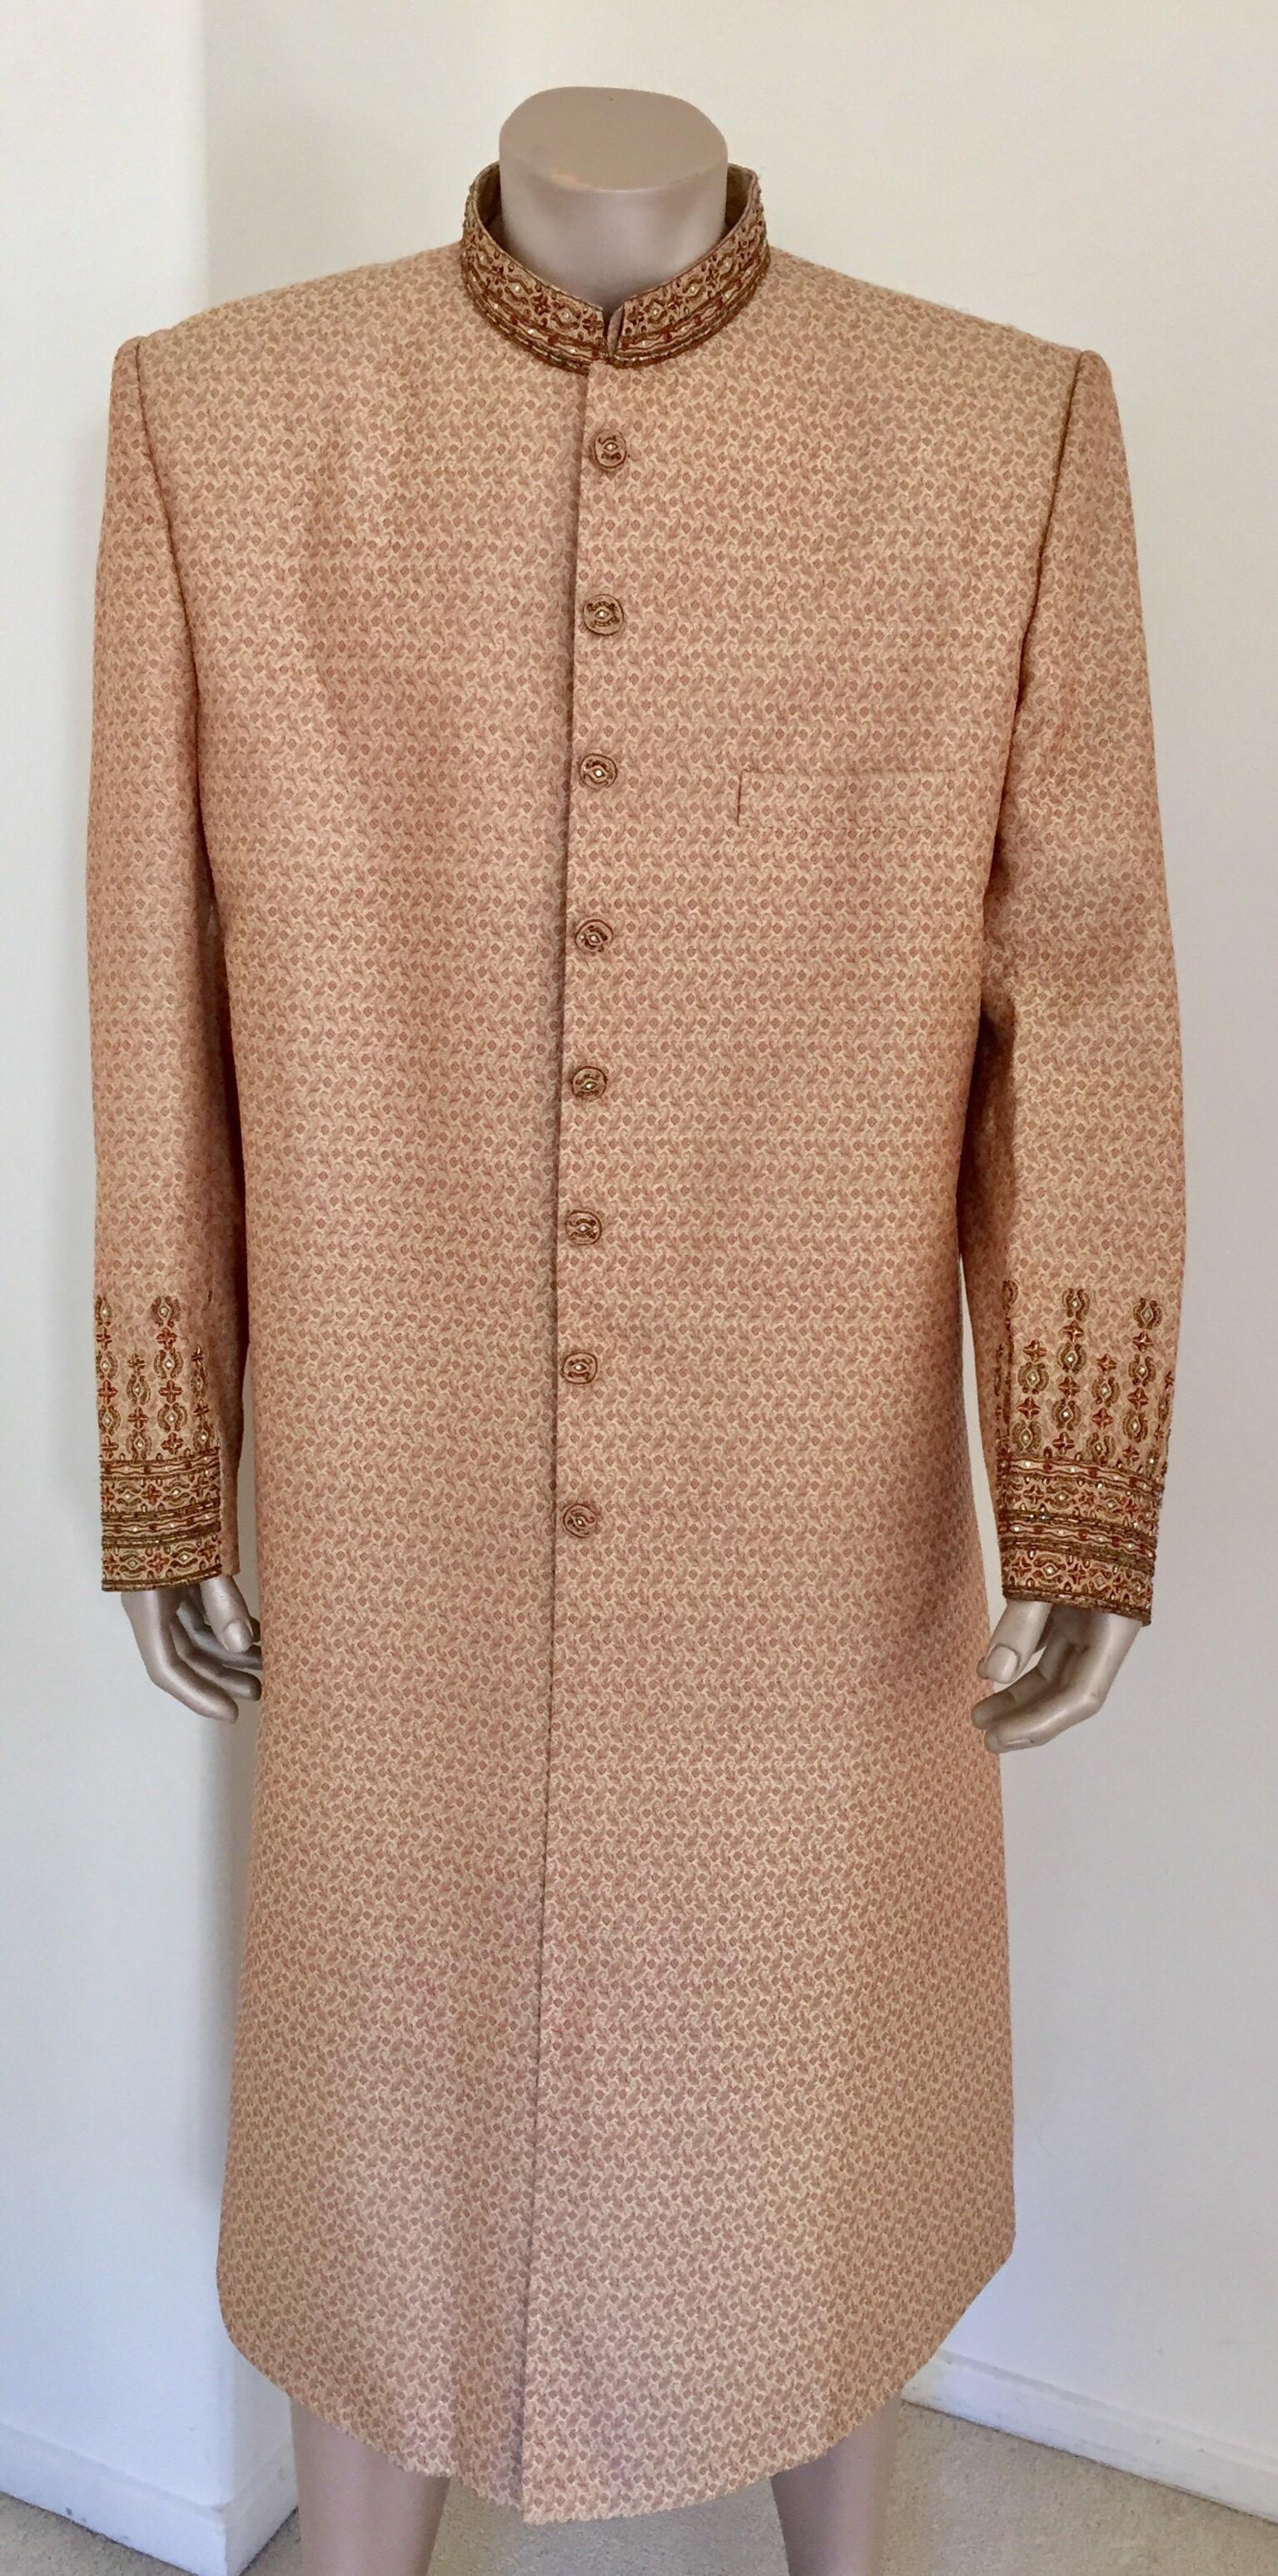 Un luxueux manteau de mariage ou de soirée haute couture en brocart de soie brodé Maharaja, Sultan, gentlemen tuxedo.
Fabriquée à la main et brodée avec des pierres de couleur et des sequins, ainsi que des patchworks.
L'élégant manteau de soirée